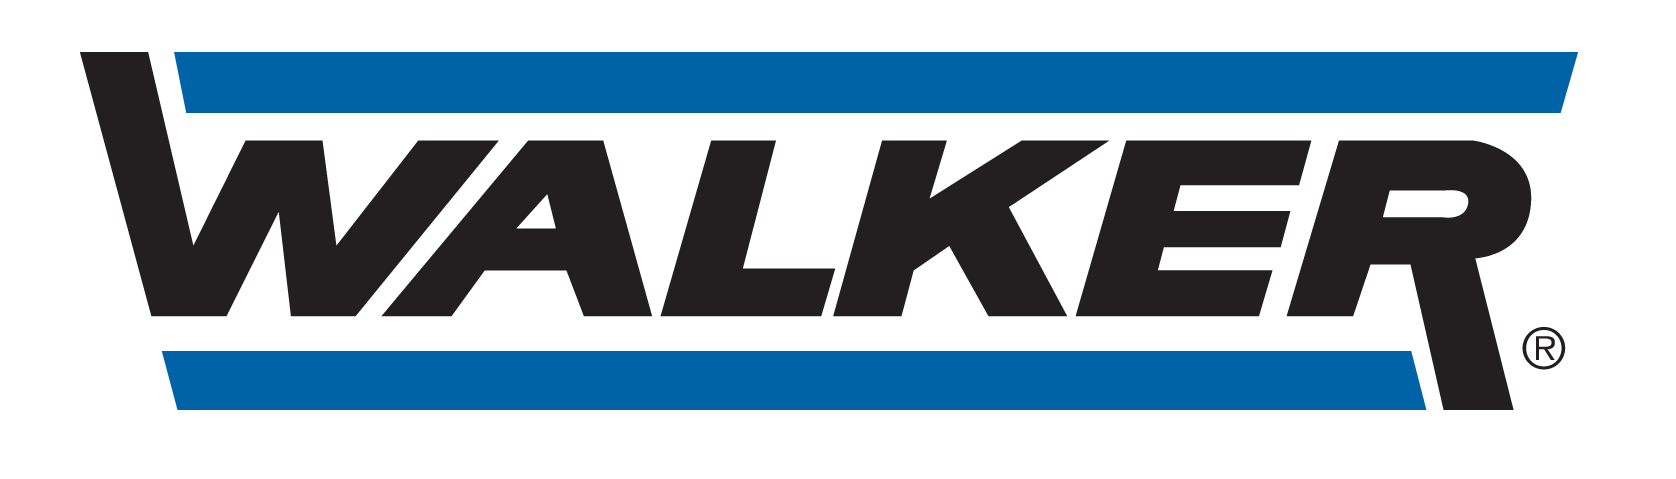 GARAGE CARA - logo Walker